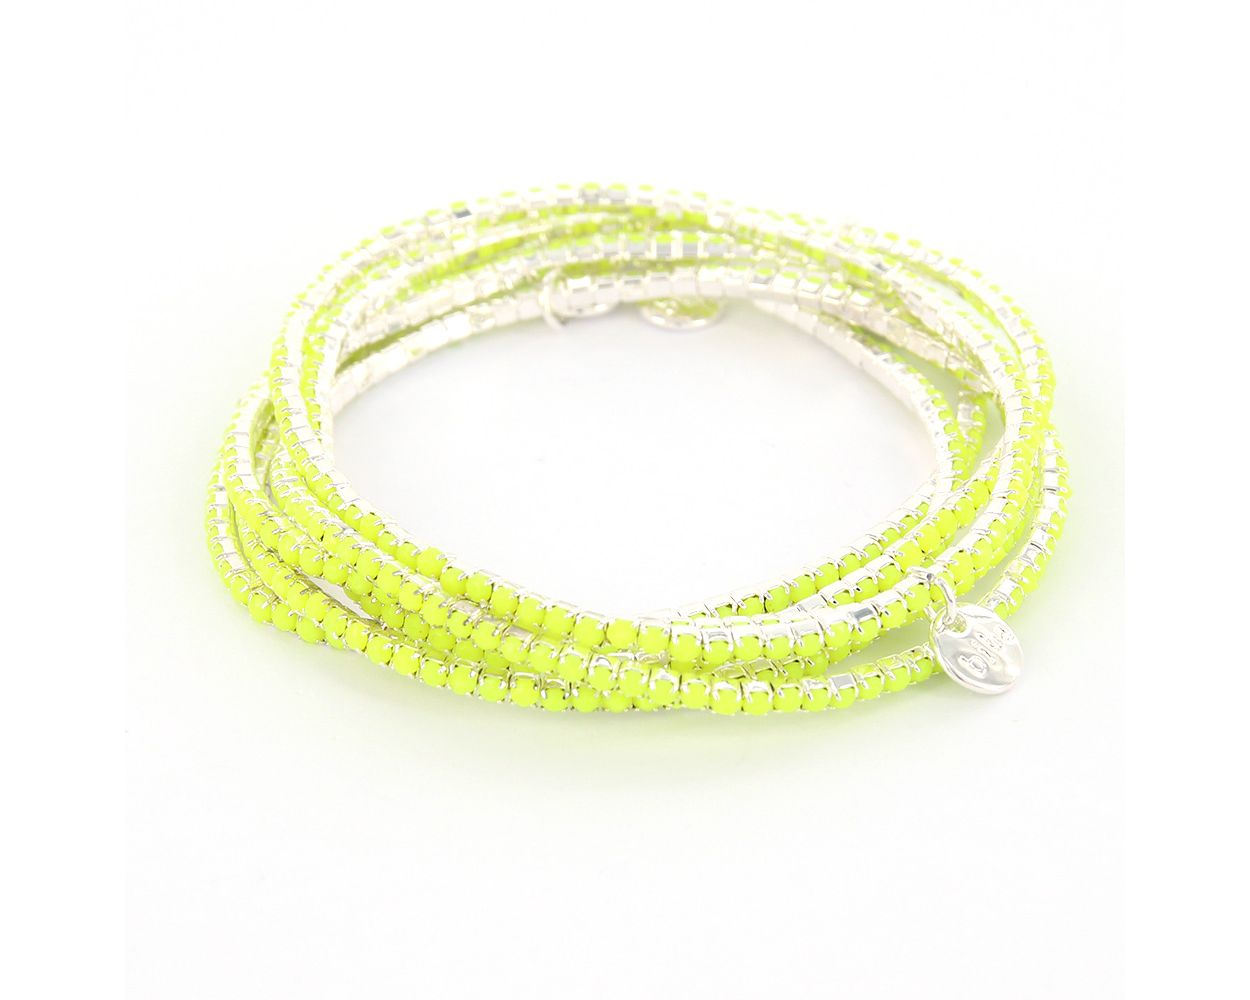 Biba Armbanden Neon Lime - 53521